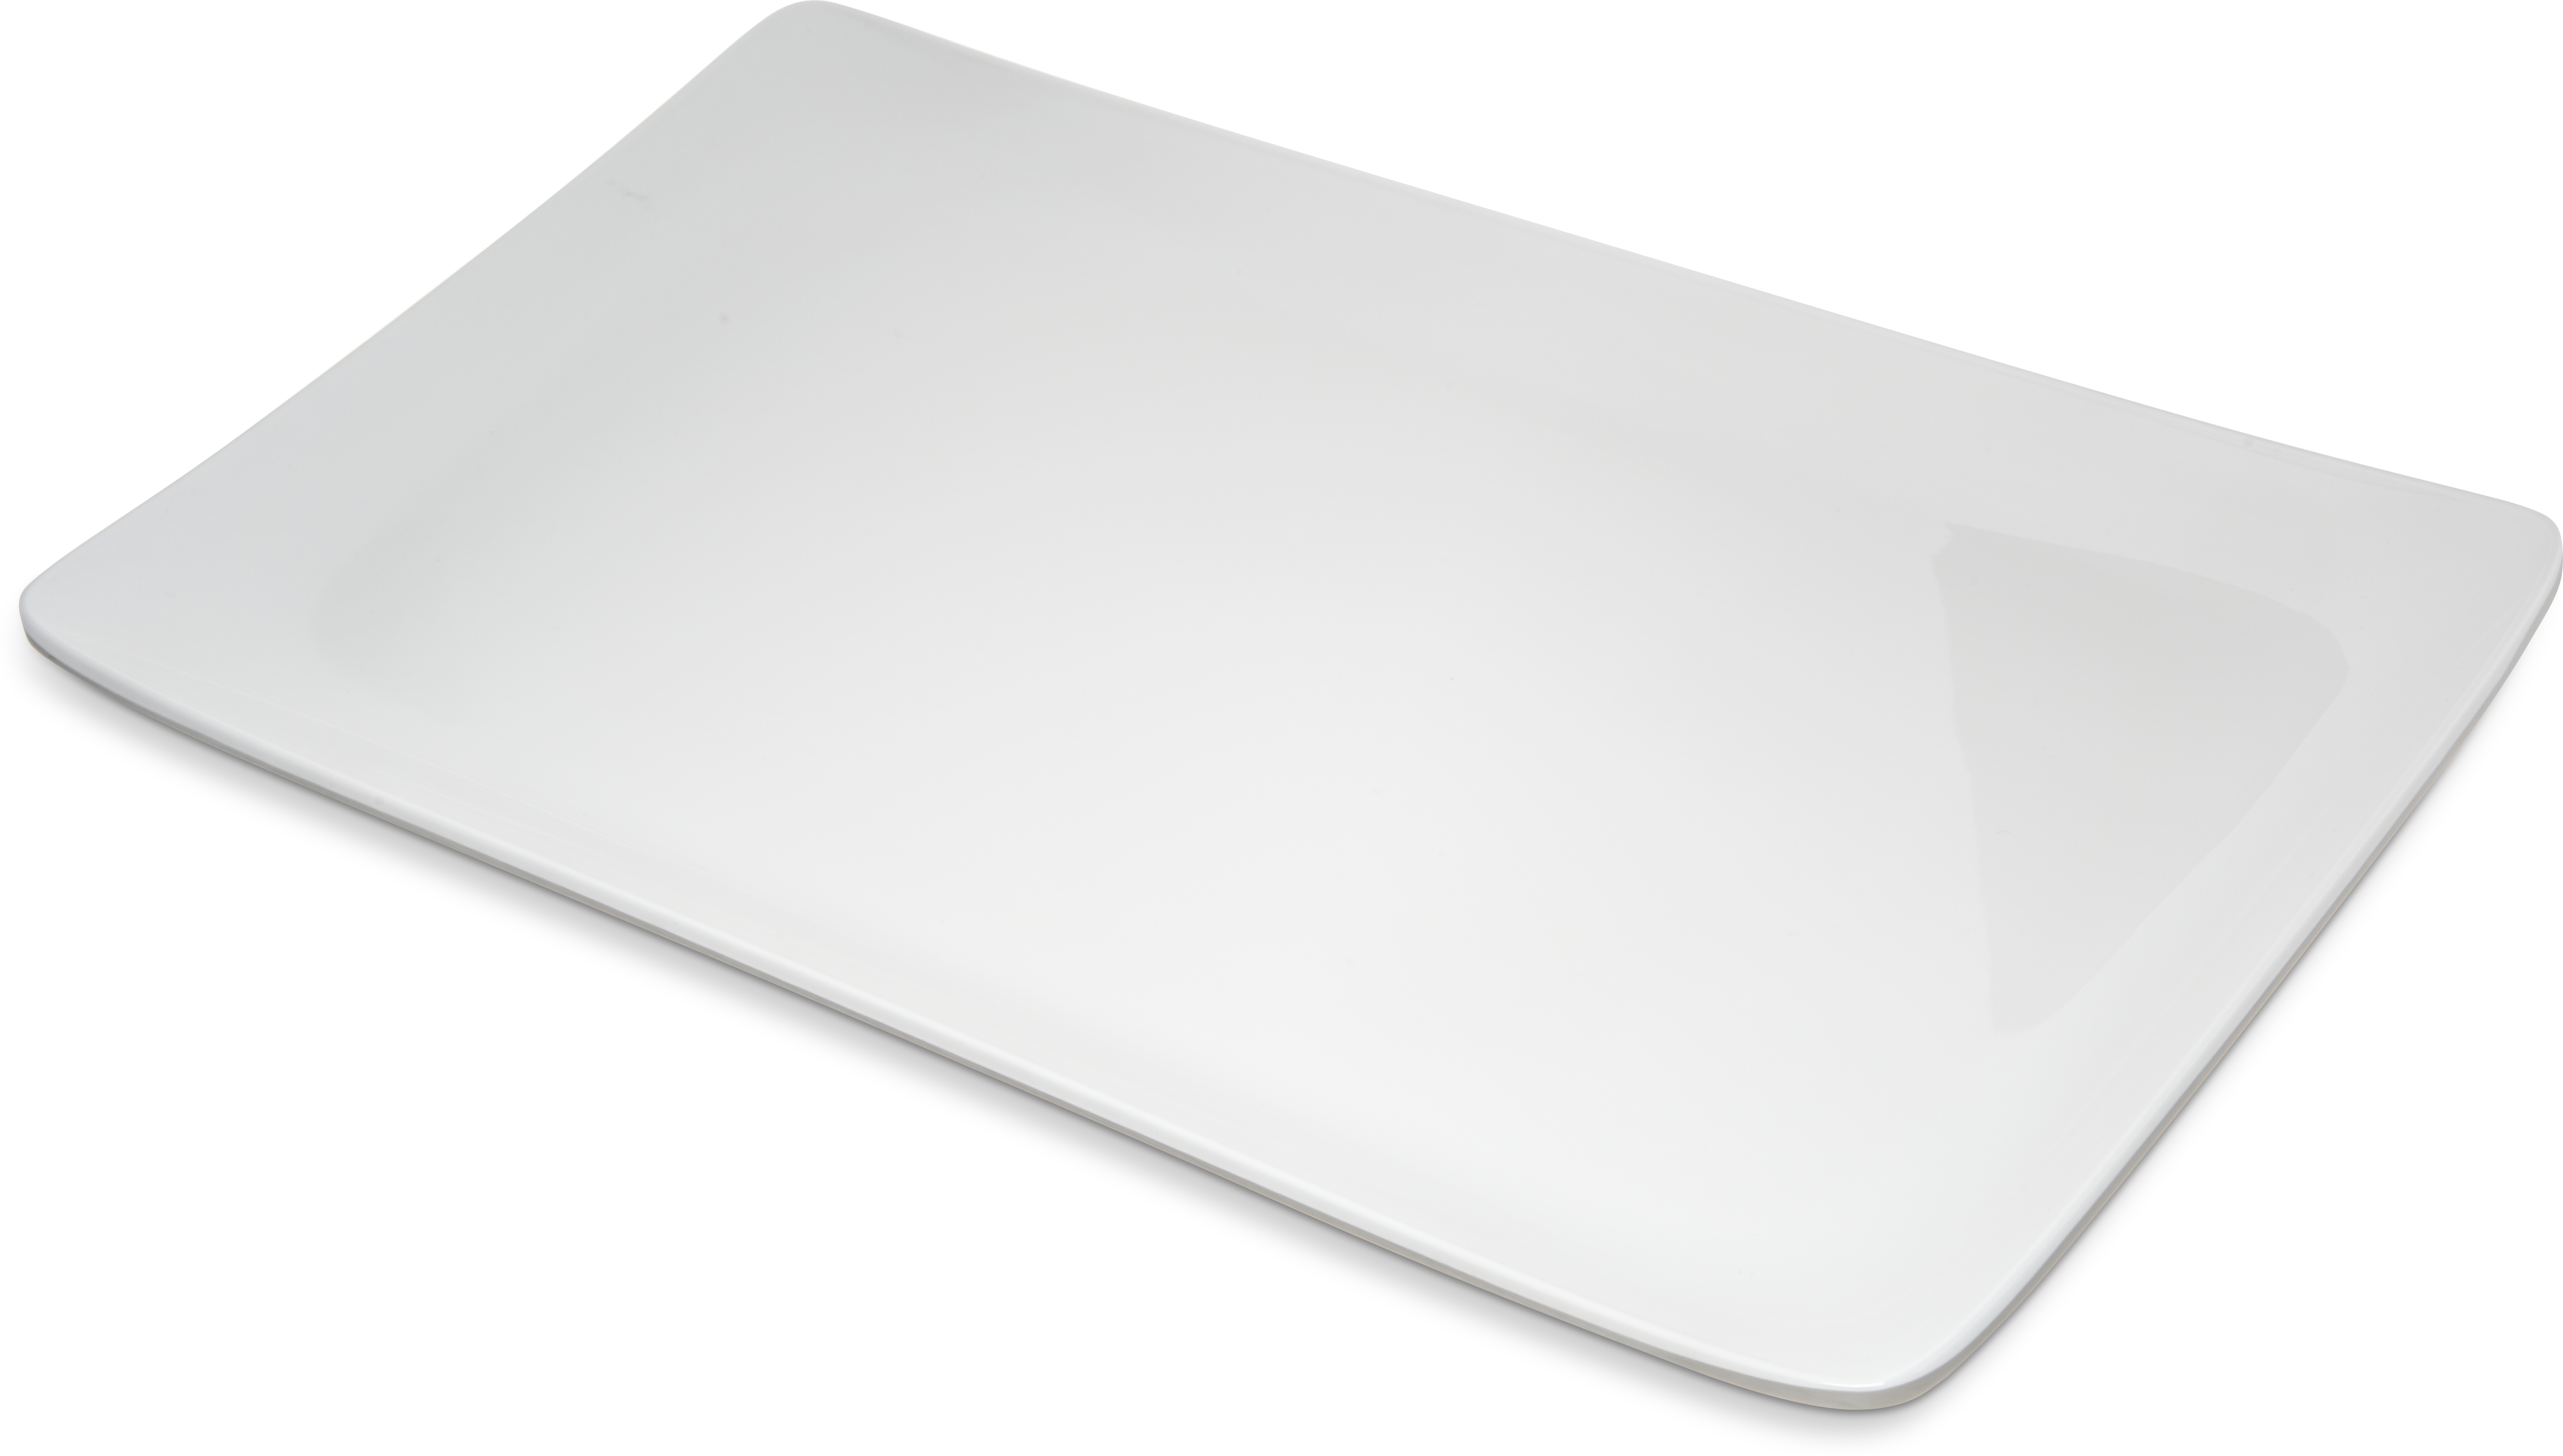 Melamine Rectangle Platter Tray 15 x 9 - White